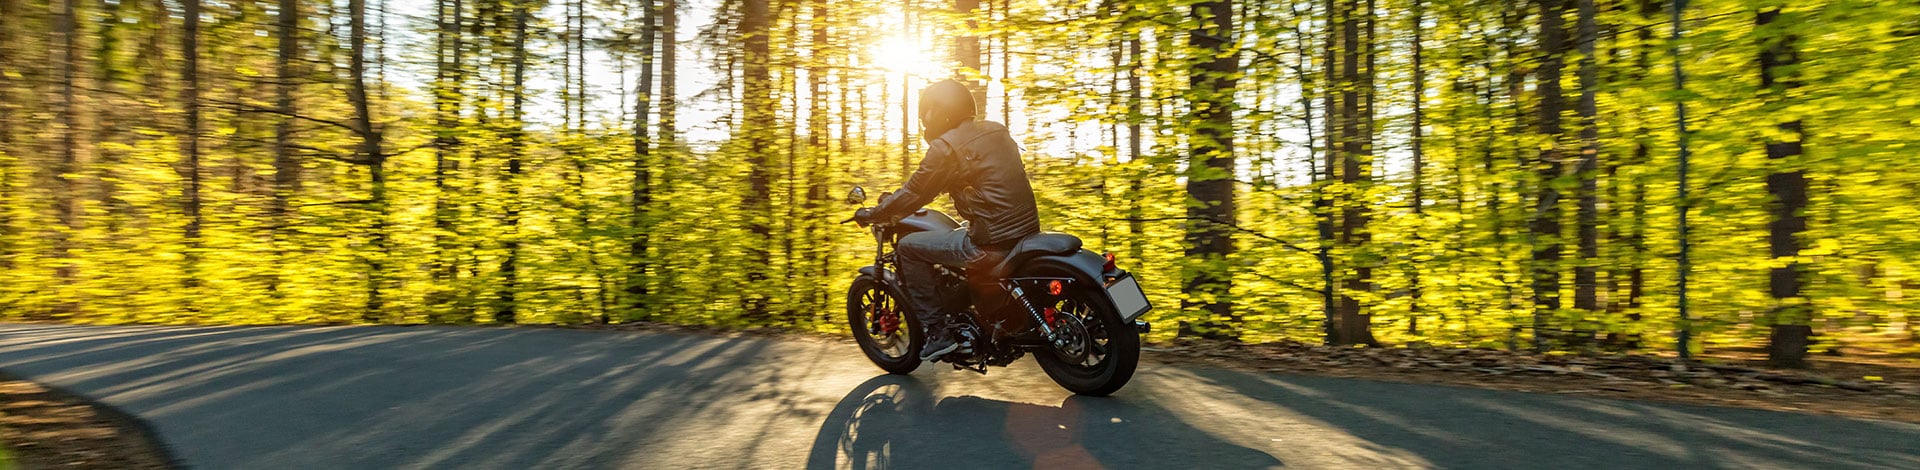 Moto noire dans une forêt 